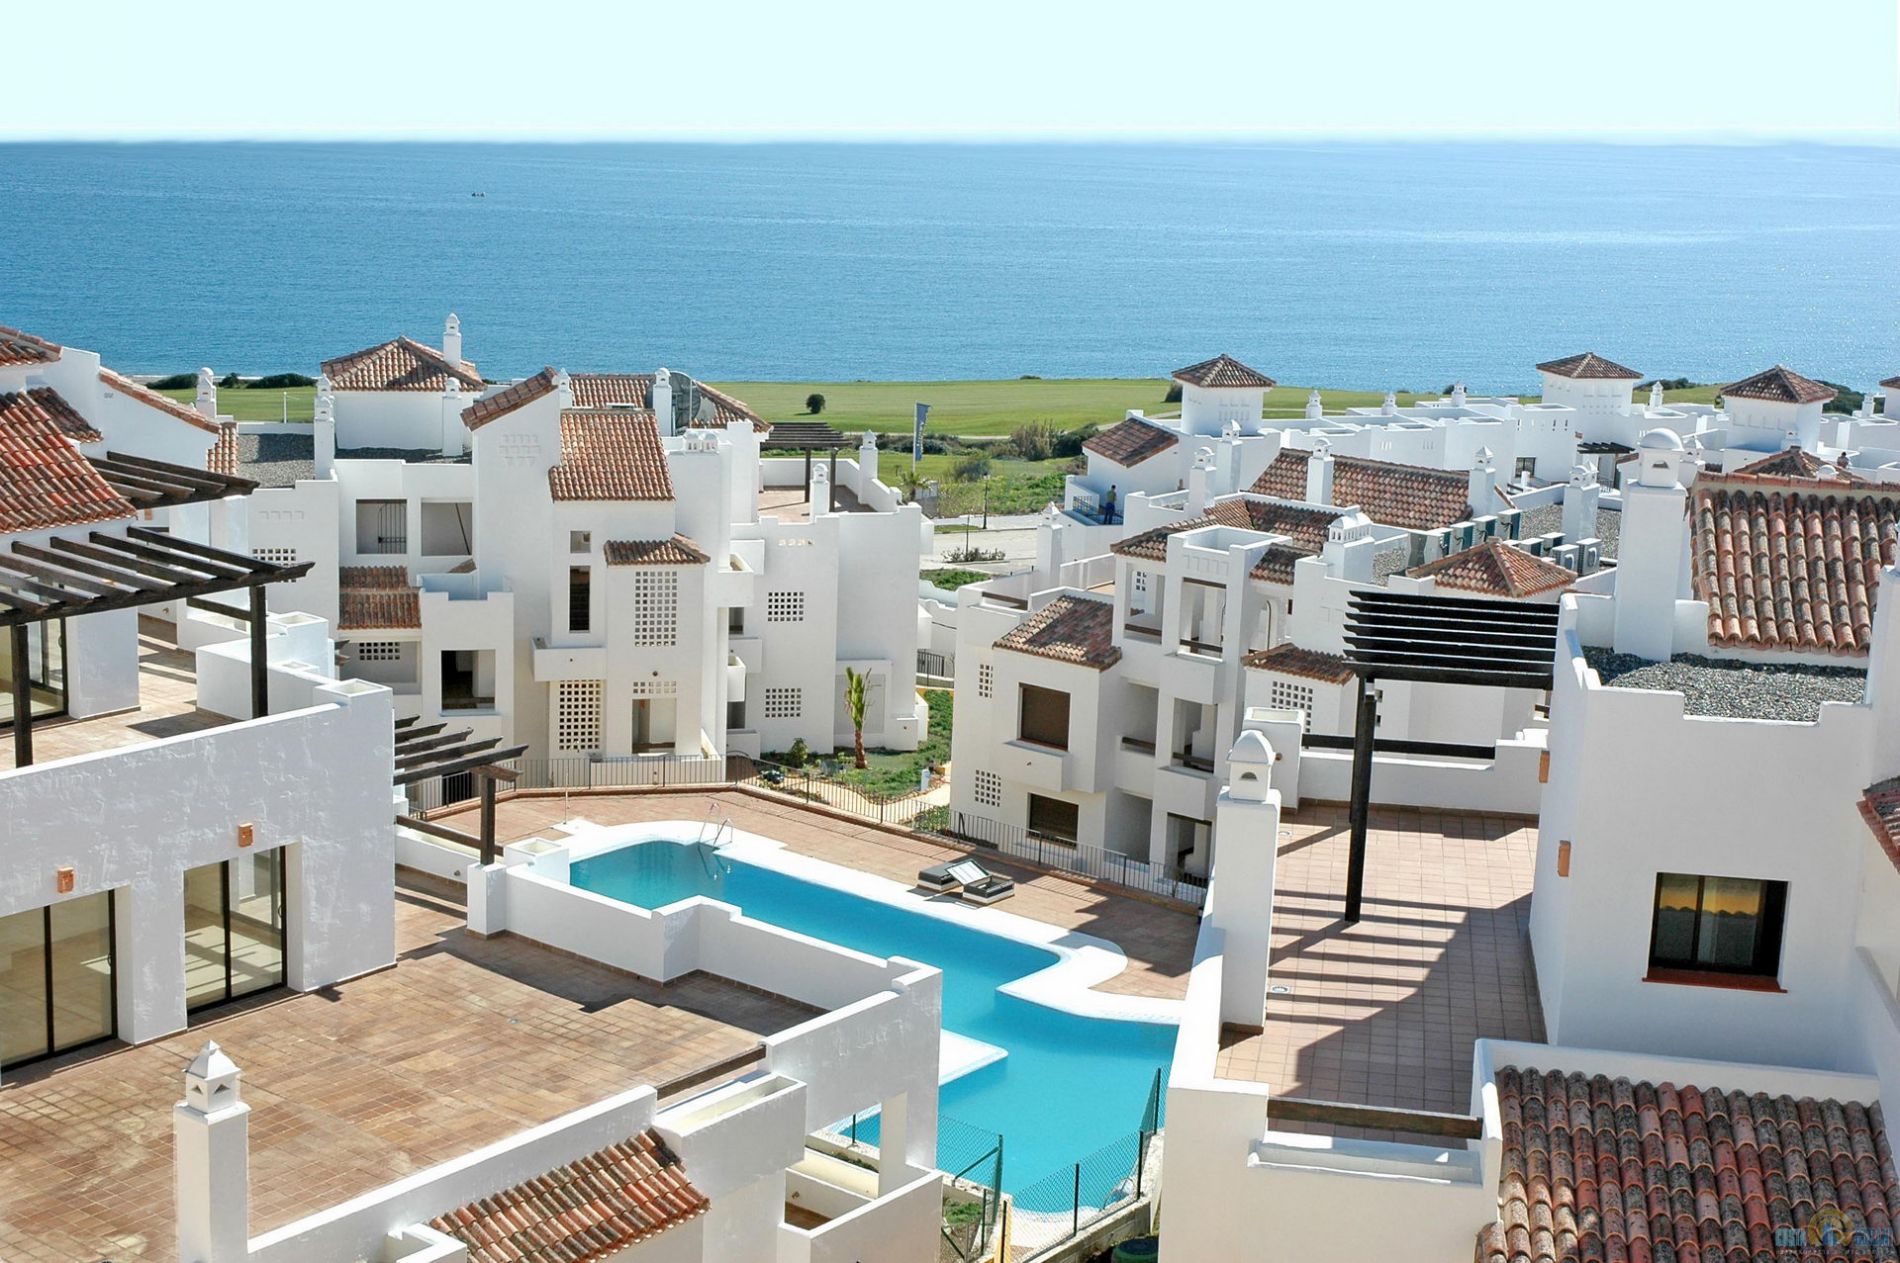 Сайты продажи недвижимости в испании: обзор лучших